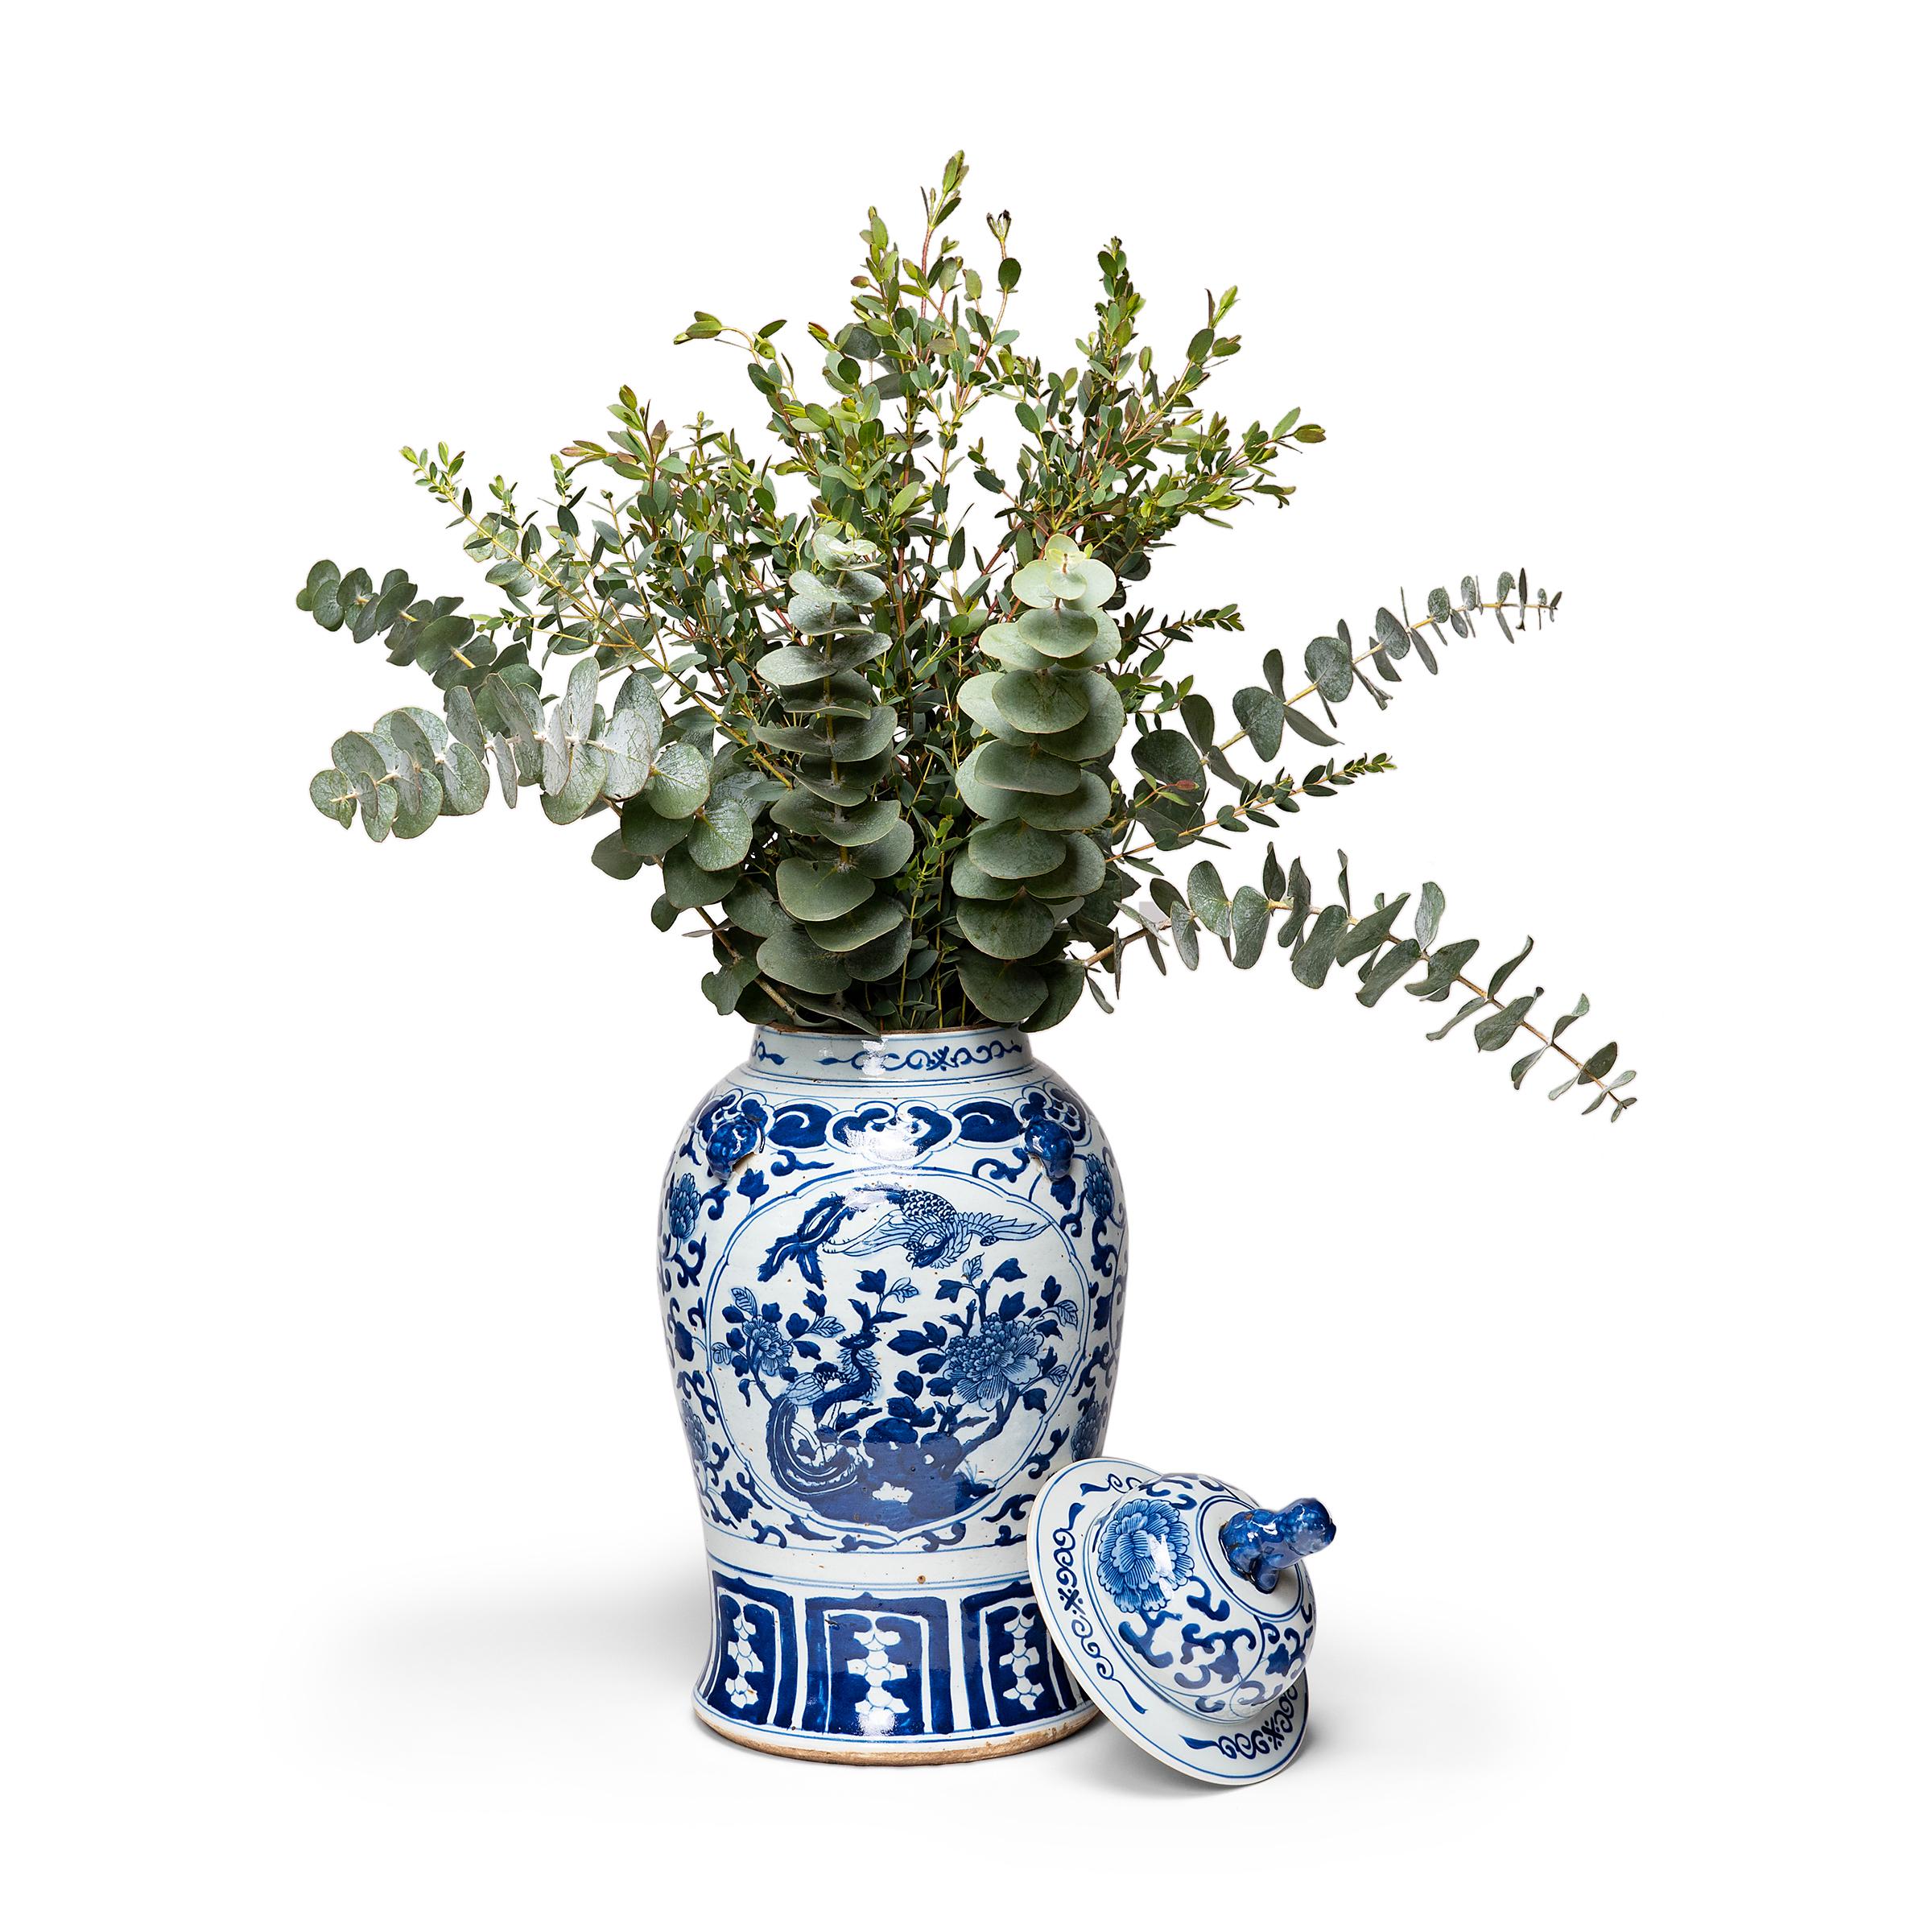 Cette jarre contemporaine à couvercle balustre s'inscrit dans la tradition séculaire de la porcelaine chinoise bleu et blanc. Peinte avec des pigments de cobalt pour une finition bleue brillante, la jarre présente un motif dense de rinceaux de